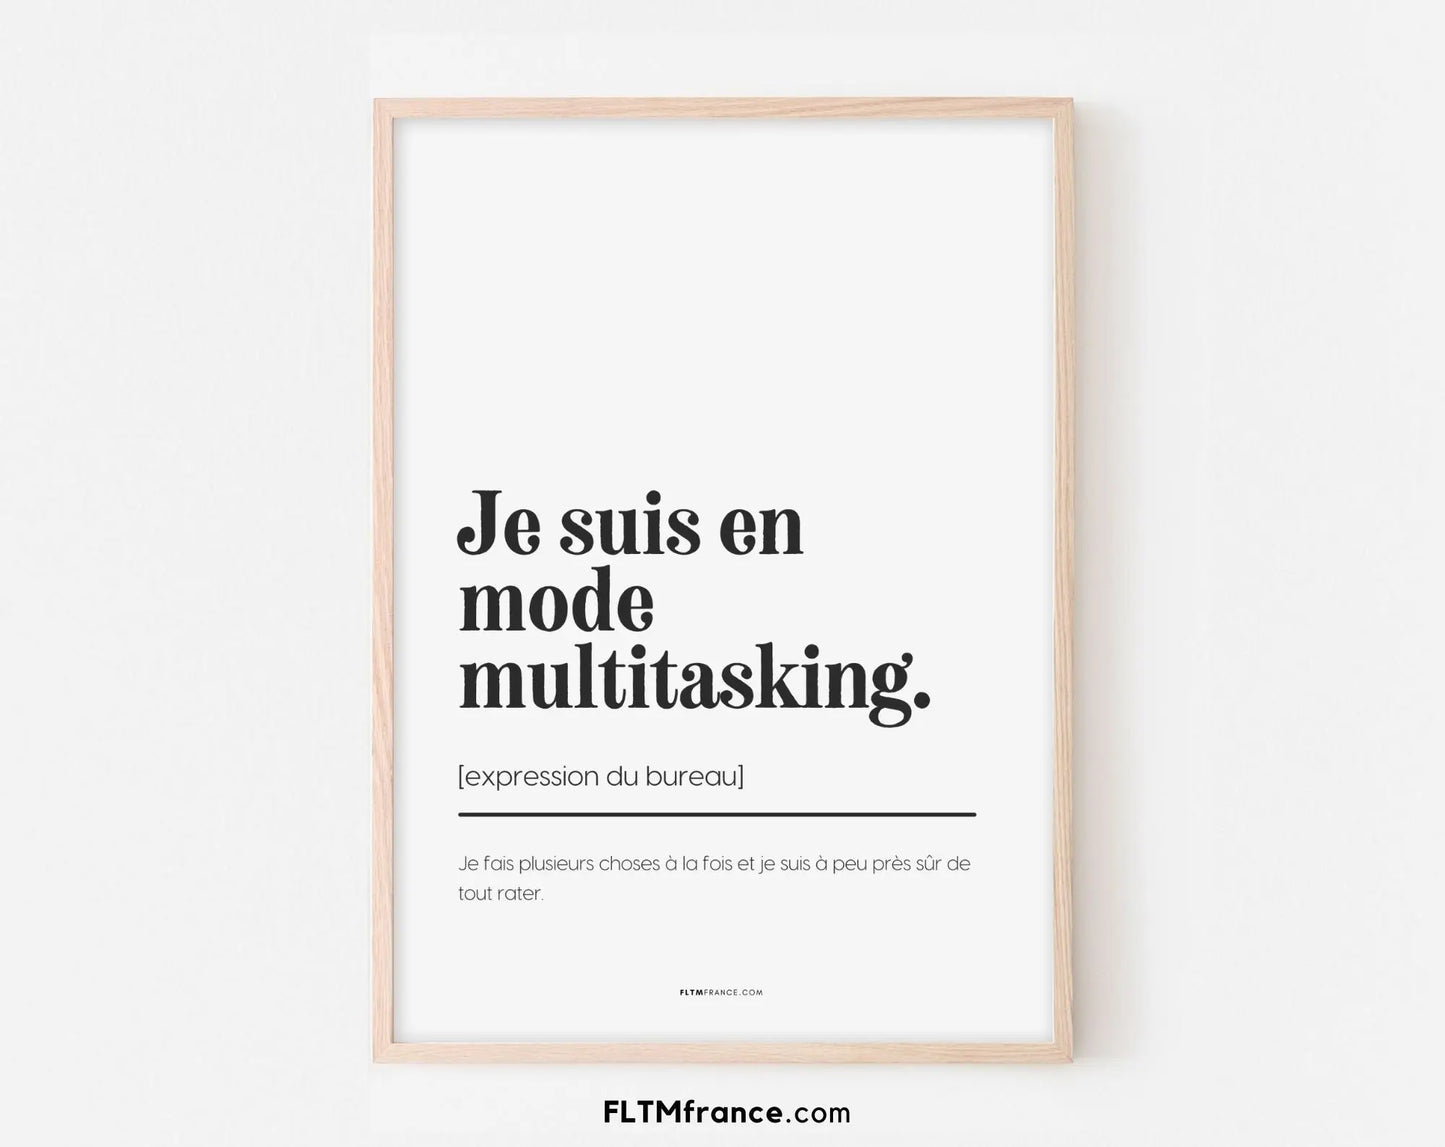 Je suis en mode multitasking - Expression du bureau - Affiche humour pour la décoration au travail - Poster à imprimer FLTMfrance FLTMfrance